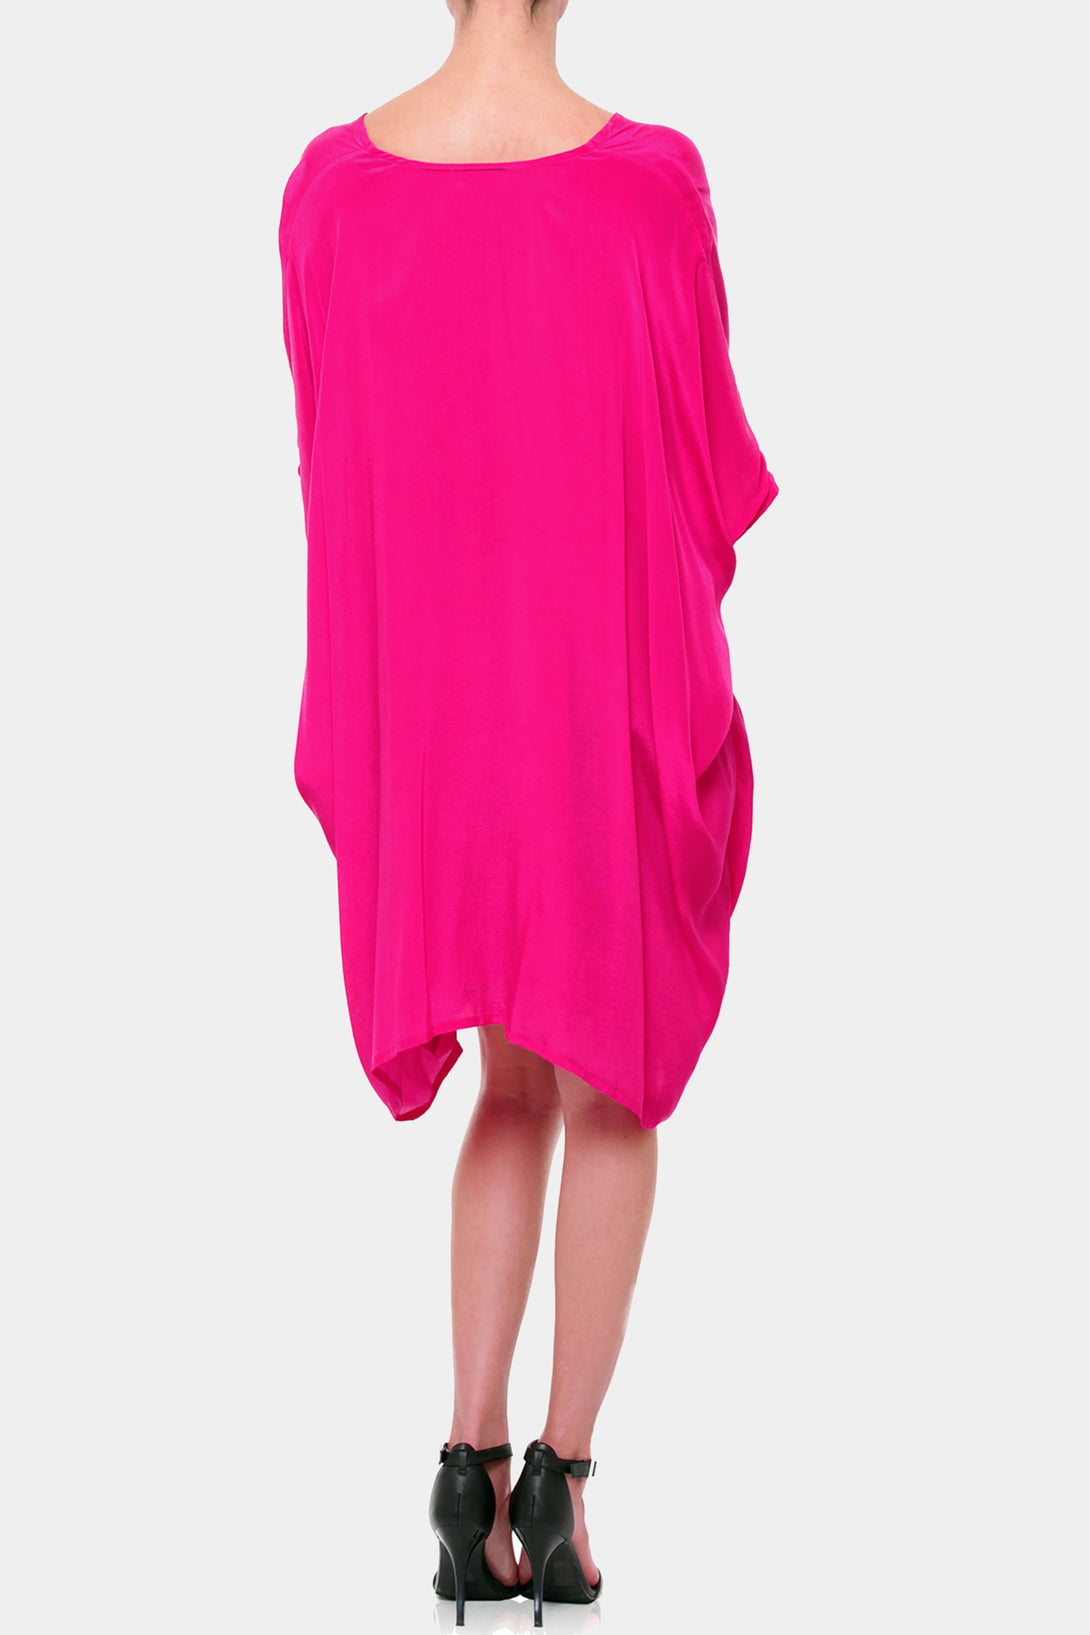  hot pink dress mini, short kaftan, Shahida Parides, sexy mini dresses for women, embellished mini dress,